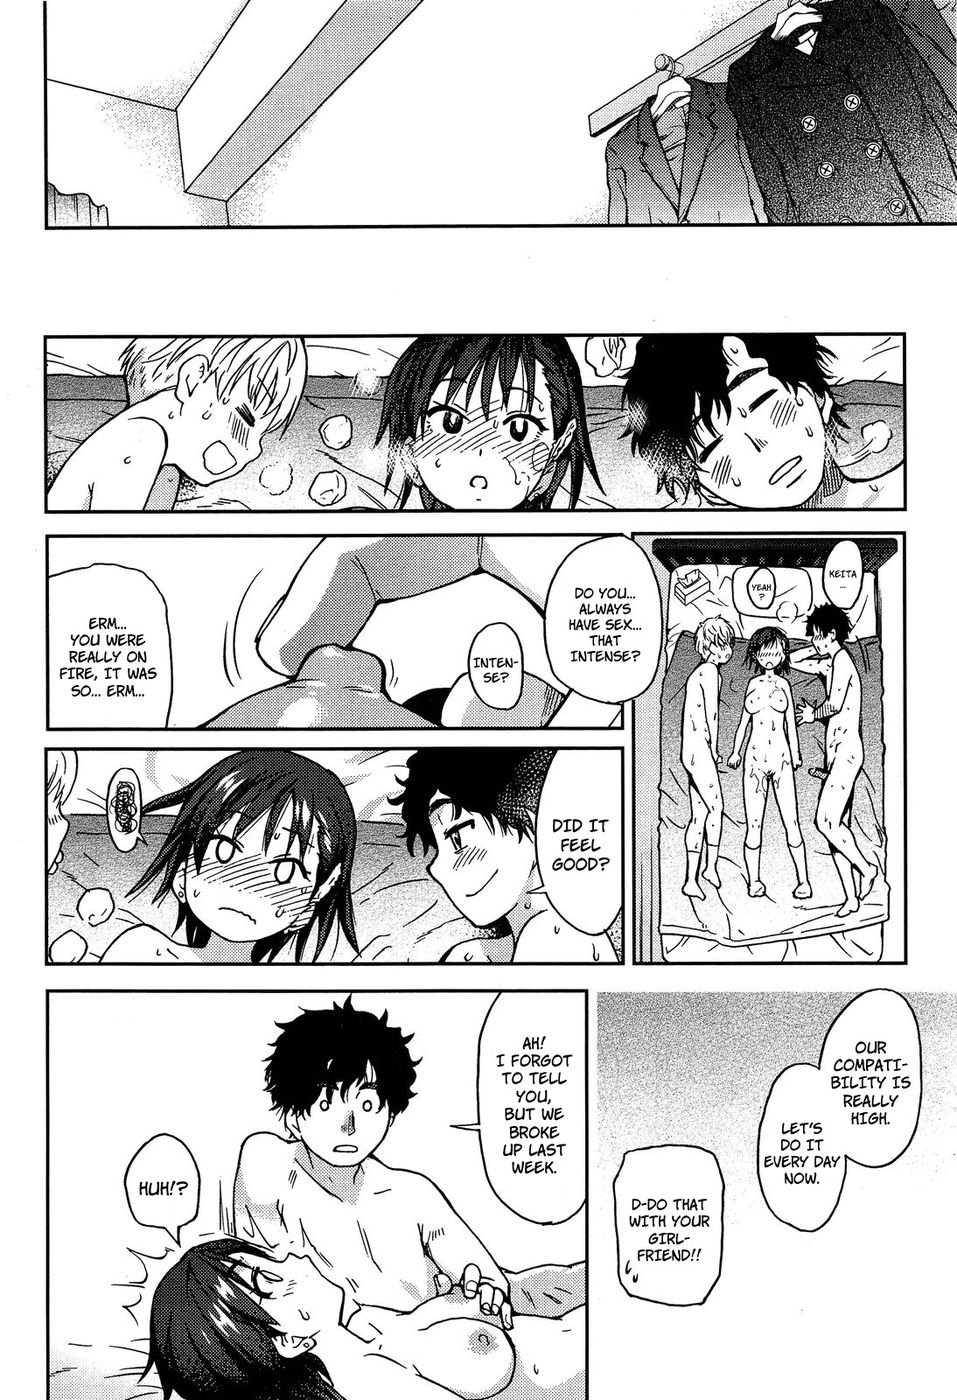 Girlfriend Boyfriend Girlfriend-Read-Hentai Manga Hentai Comic image photo image